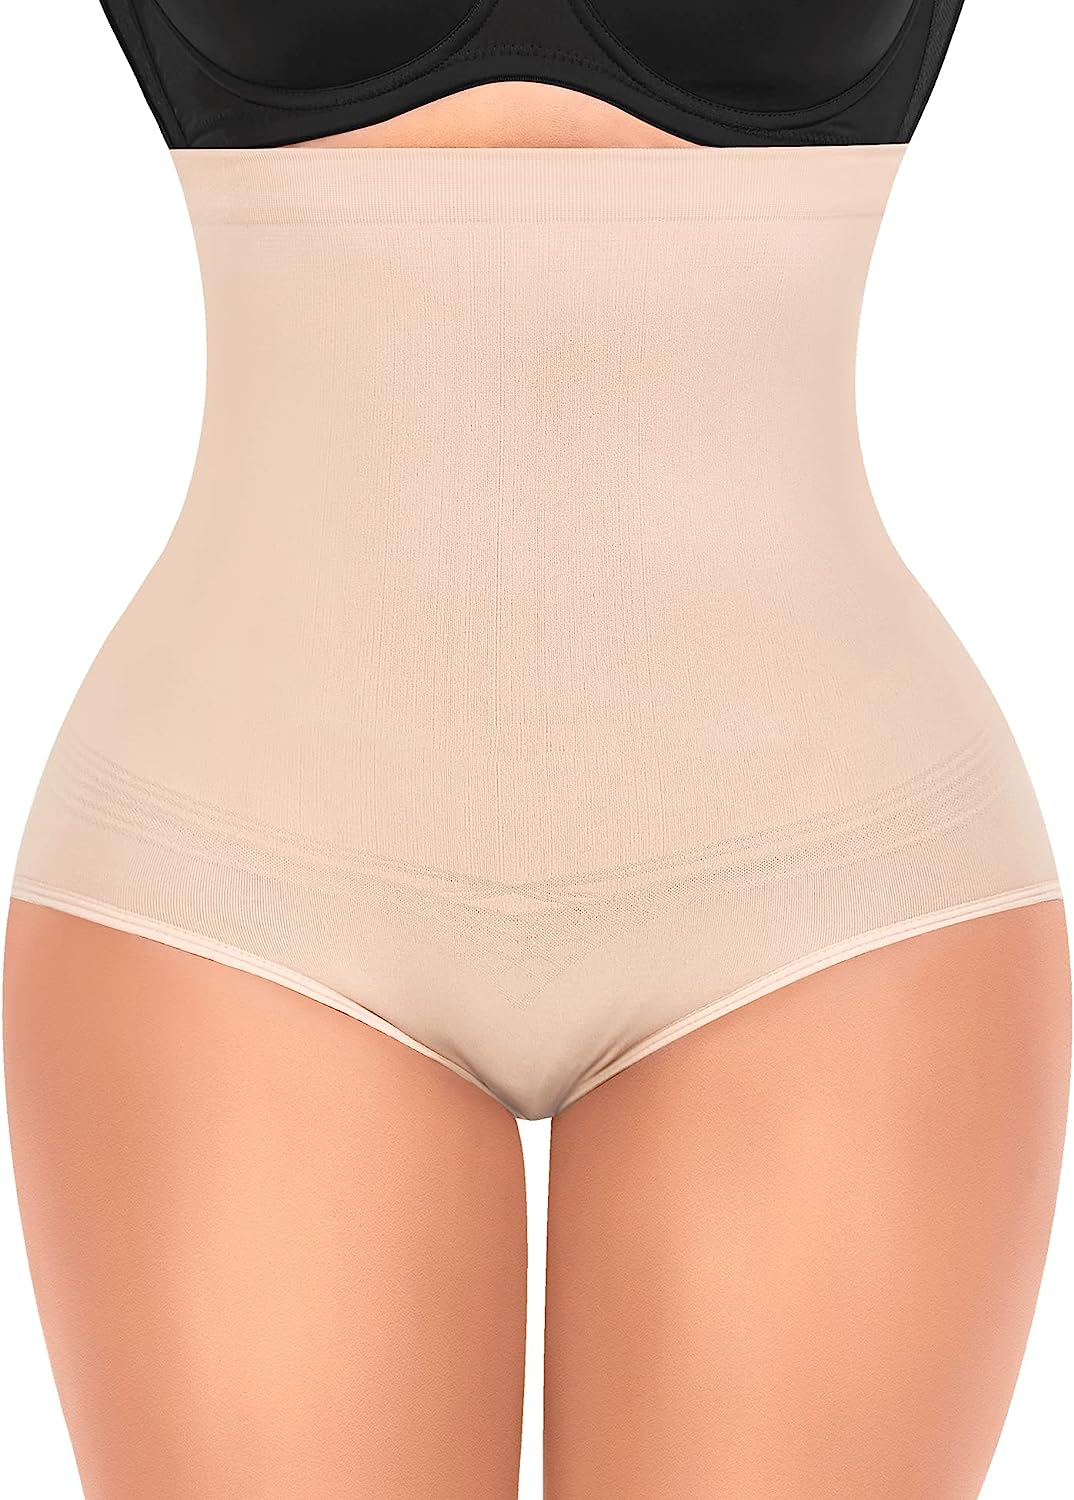 DERCA Tummy Control Shapewear Panties for Women High Nigeria